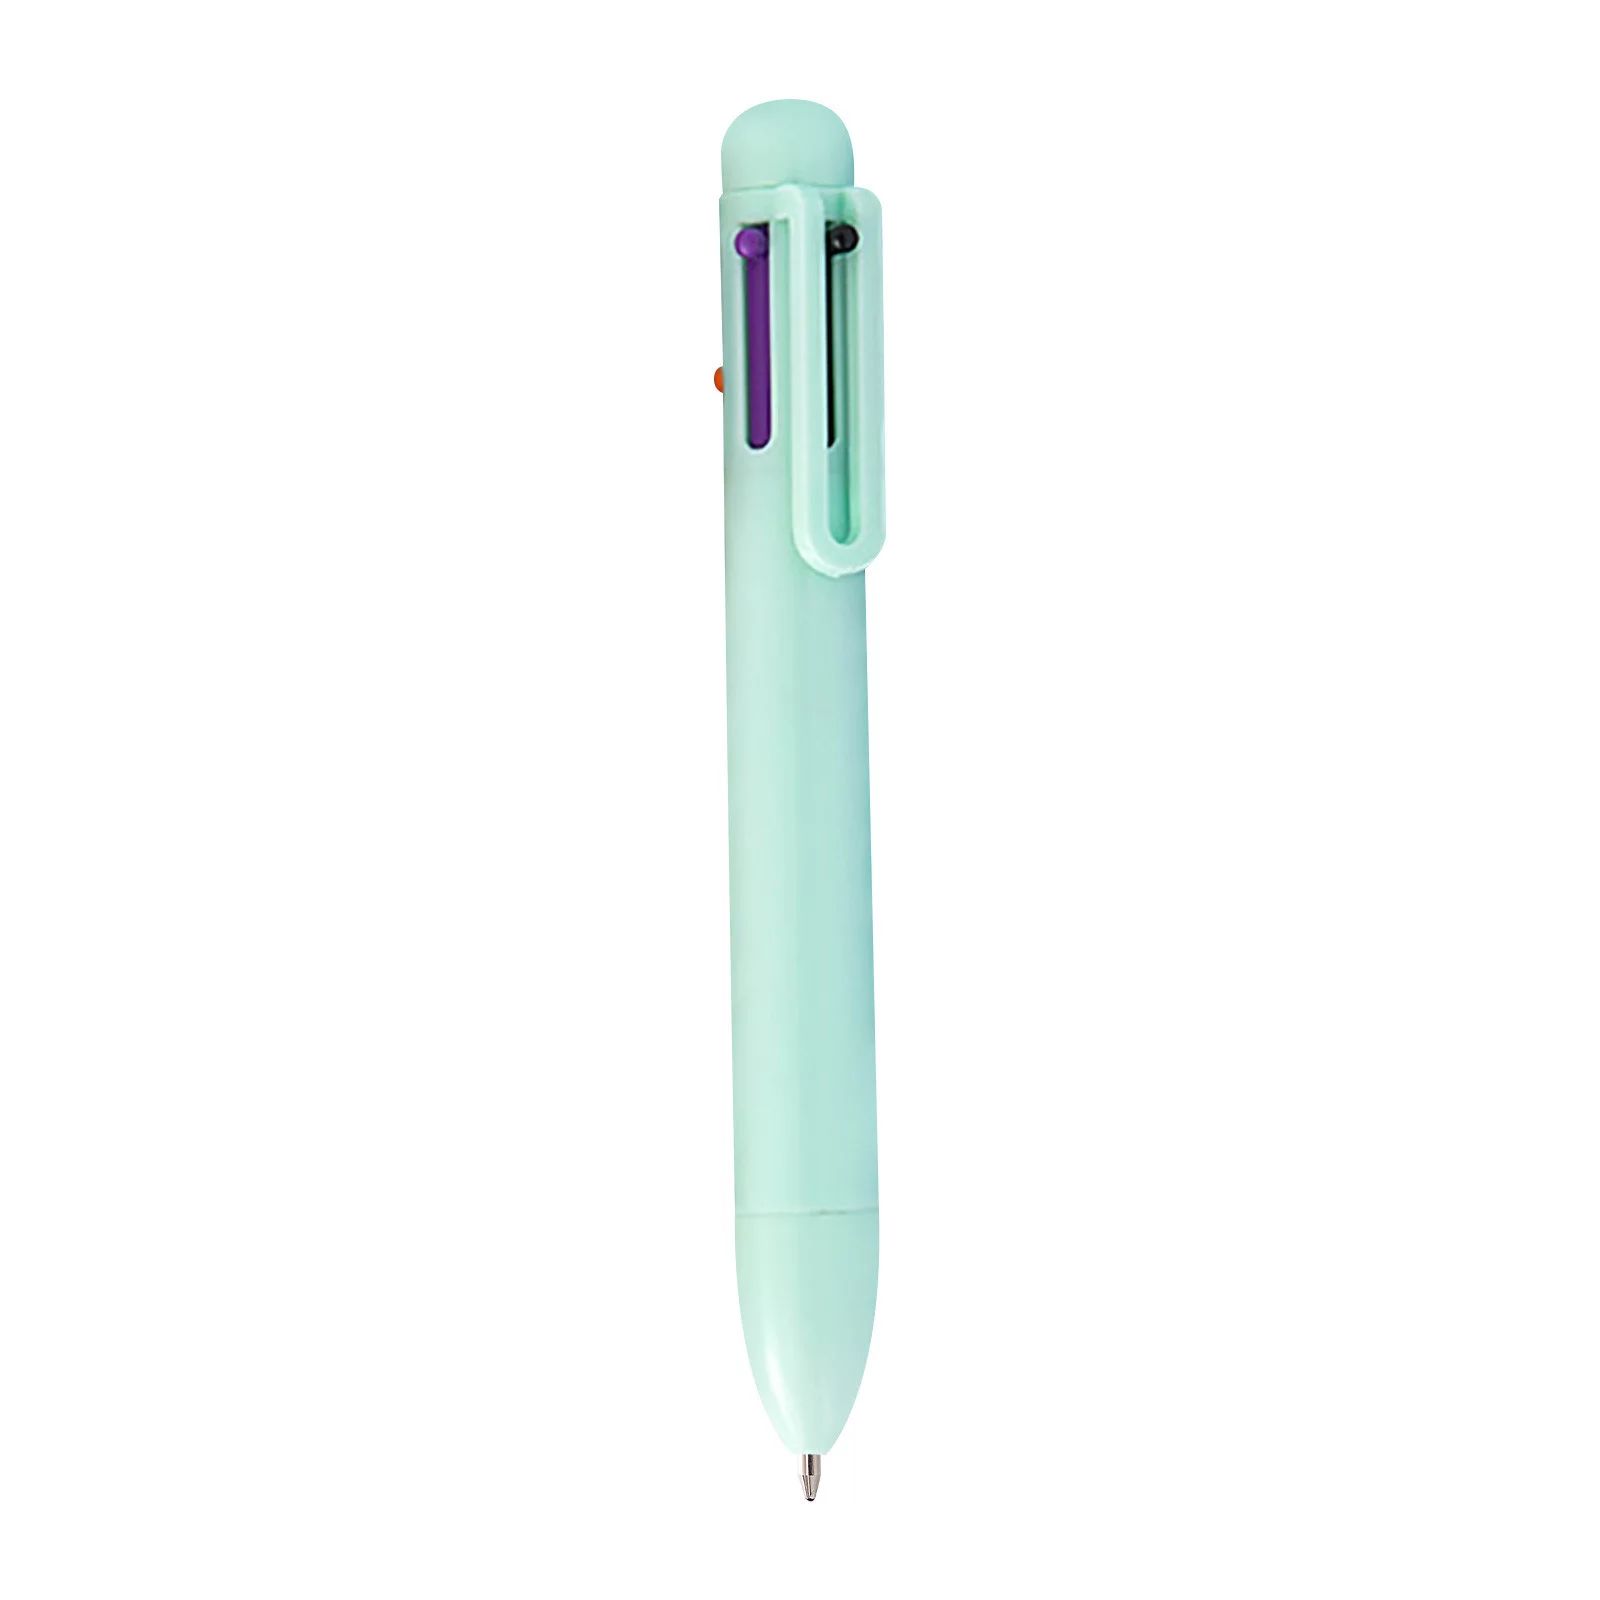 Fridja 0.5mm 6-in-1 Multicolor Ballpoint Pen, 6-Color Retractable Ballpoint Pens For Office Schoo... | Walmart (US)